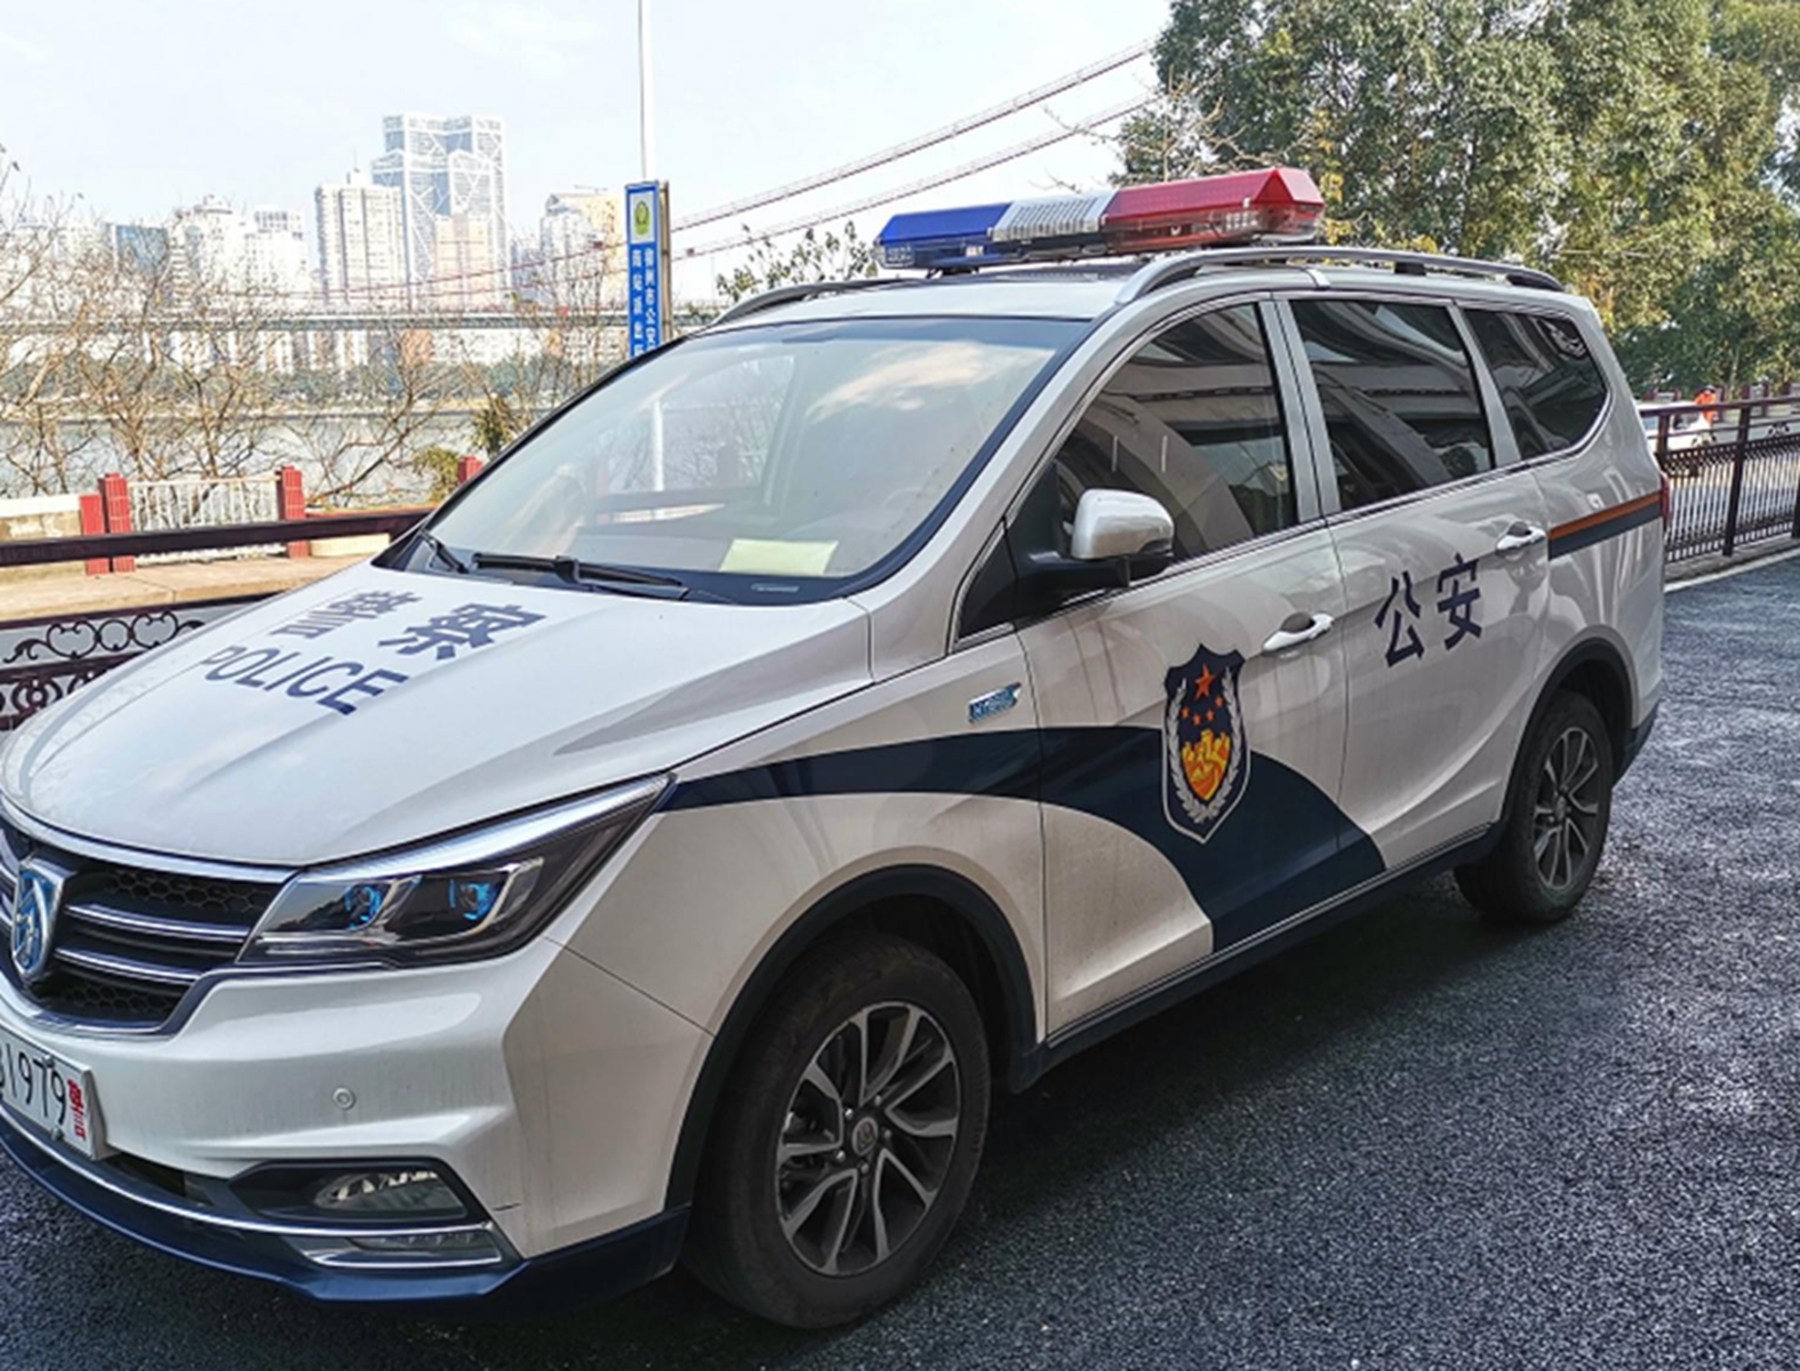 国内警车迎来换代,上海换荣威,广西换宝骏,国产车崛起了